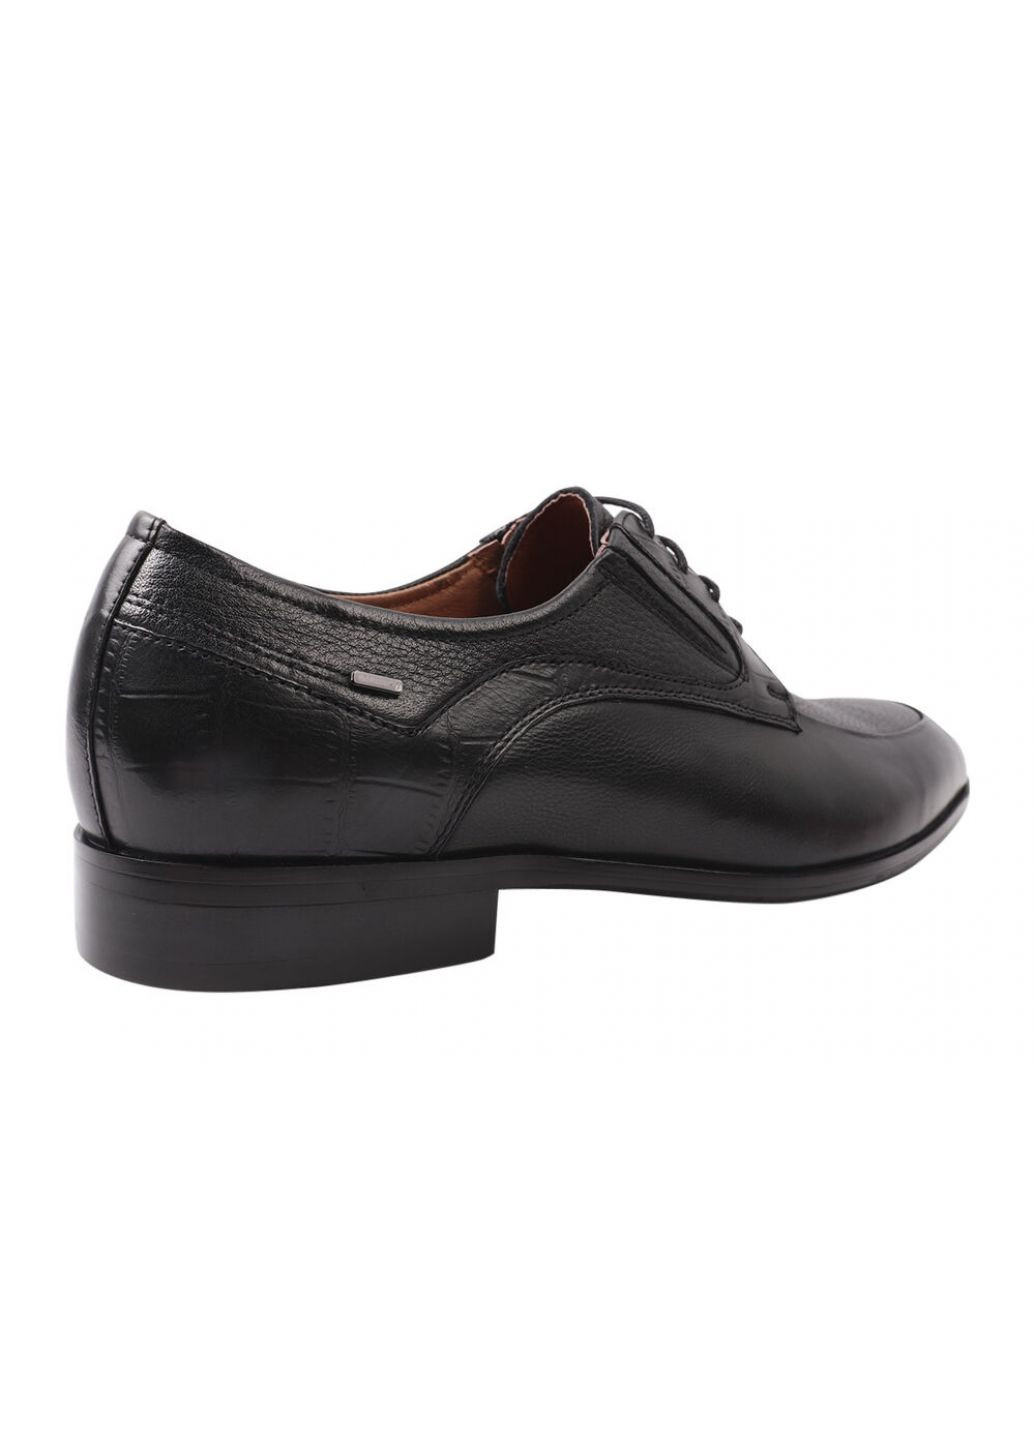 Черные туфли мужские из натуральной кожи, на низком ходу, на шнуровке, цвет черный, Anemone